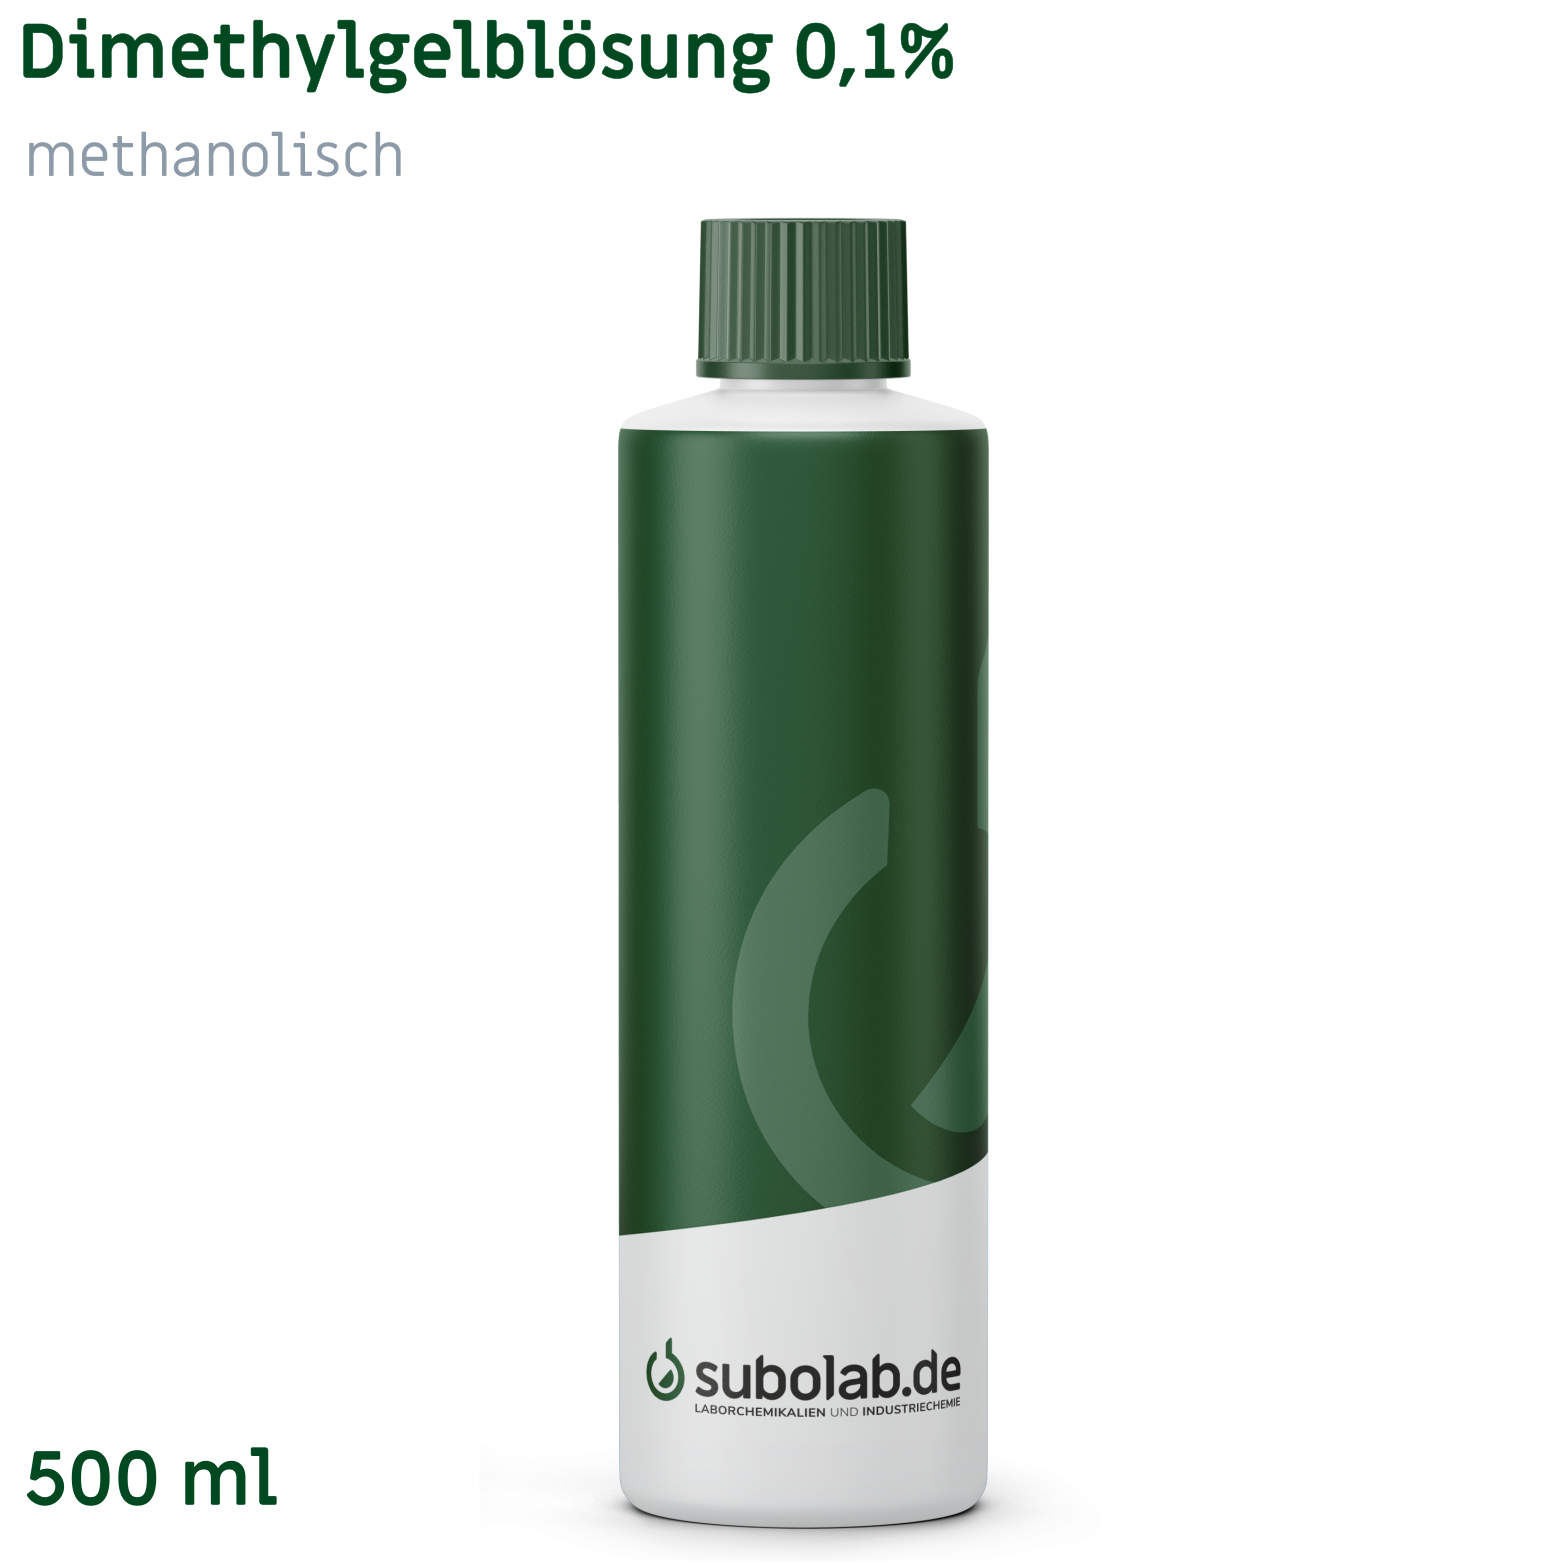 Bild von Dimethylgelblösung 0,1% methanolisch (500 ml)